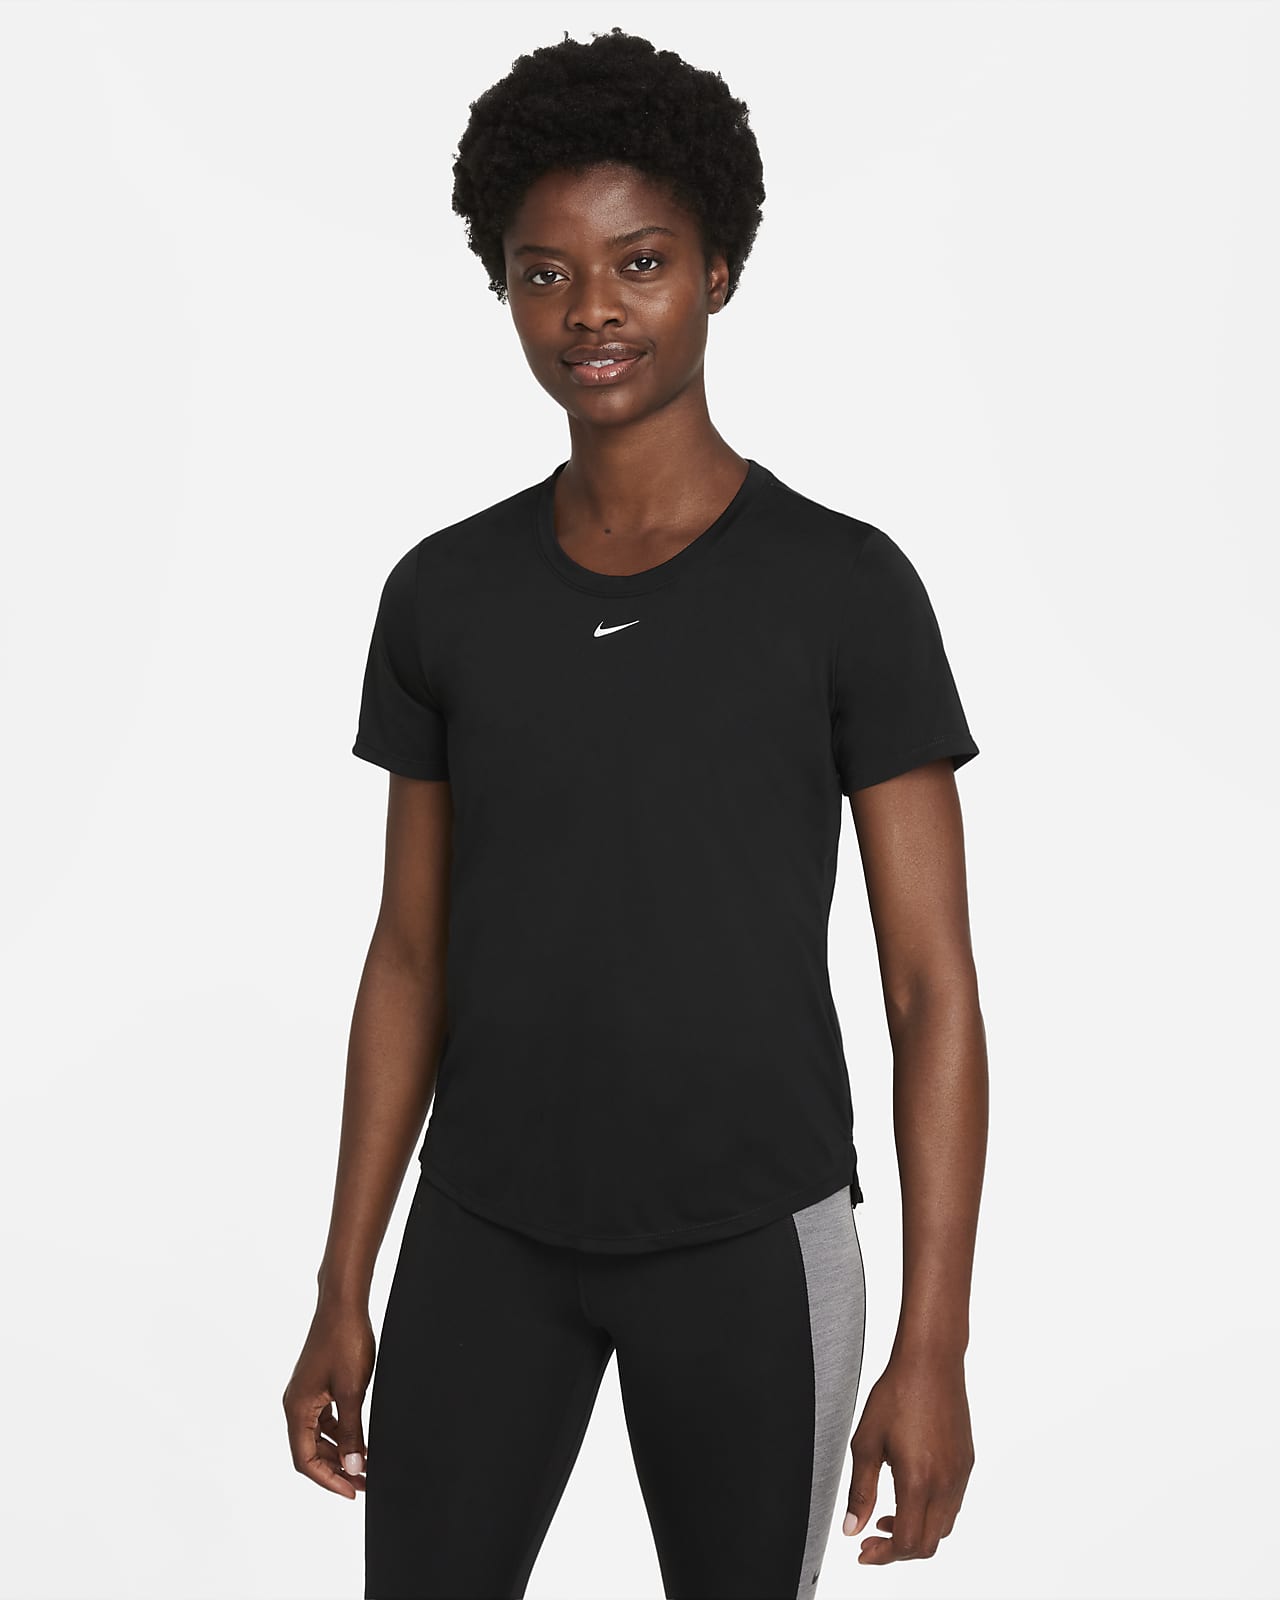 Playera de manga corta y ajuste estándar para mujer Nike Dri-FIT One